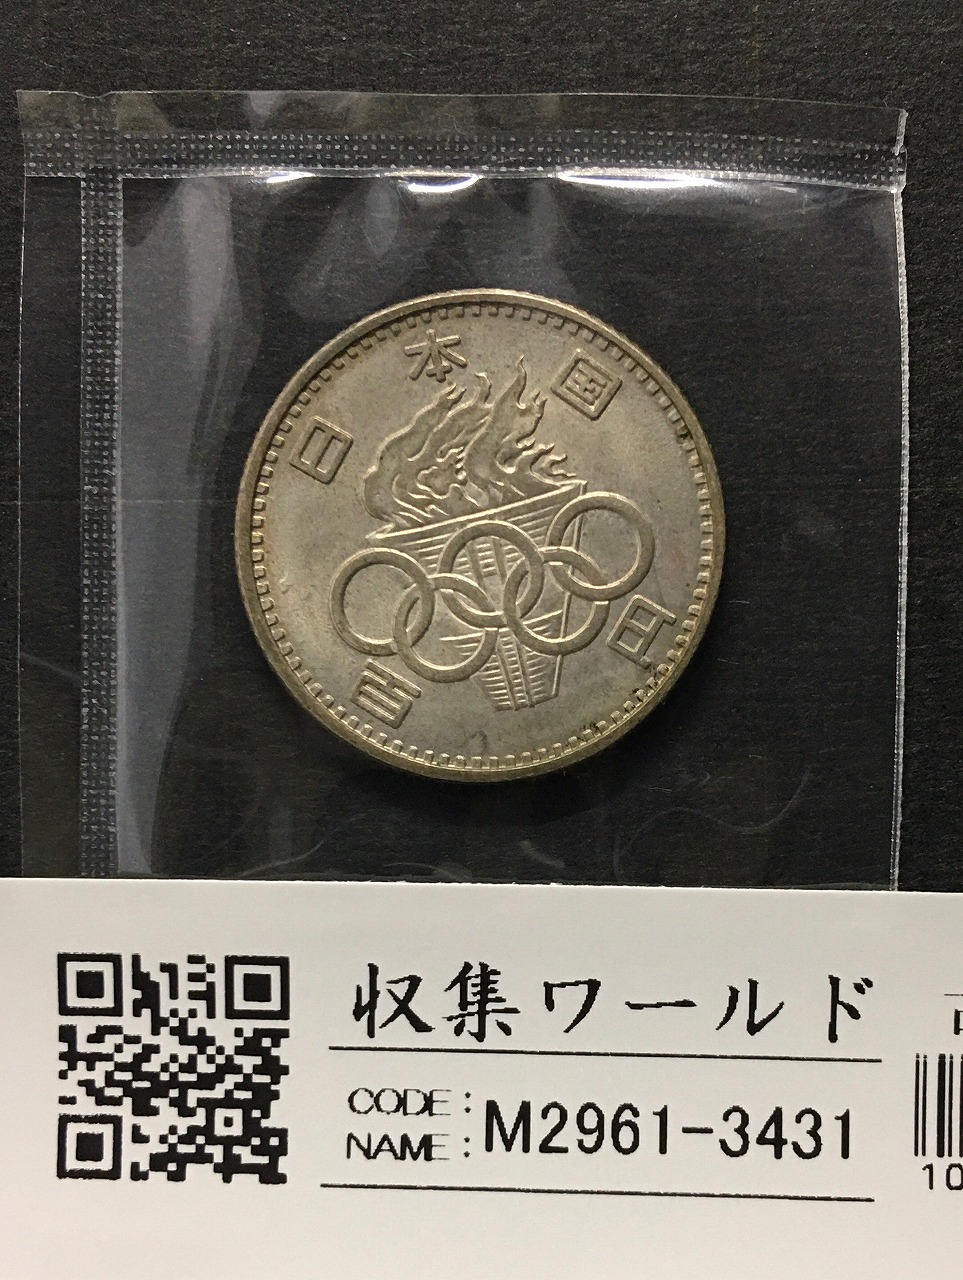 1964年 東京オリンピック記念 100円銀貨 (ト-ン) 未使用-3431